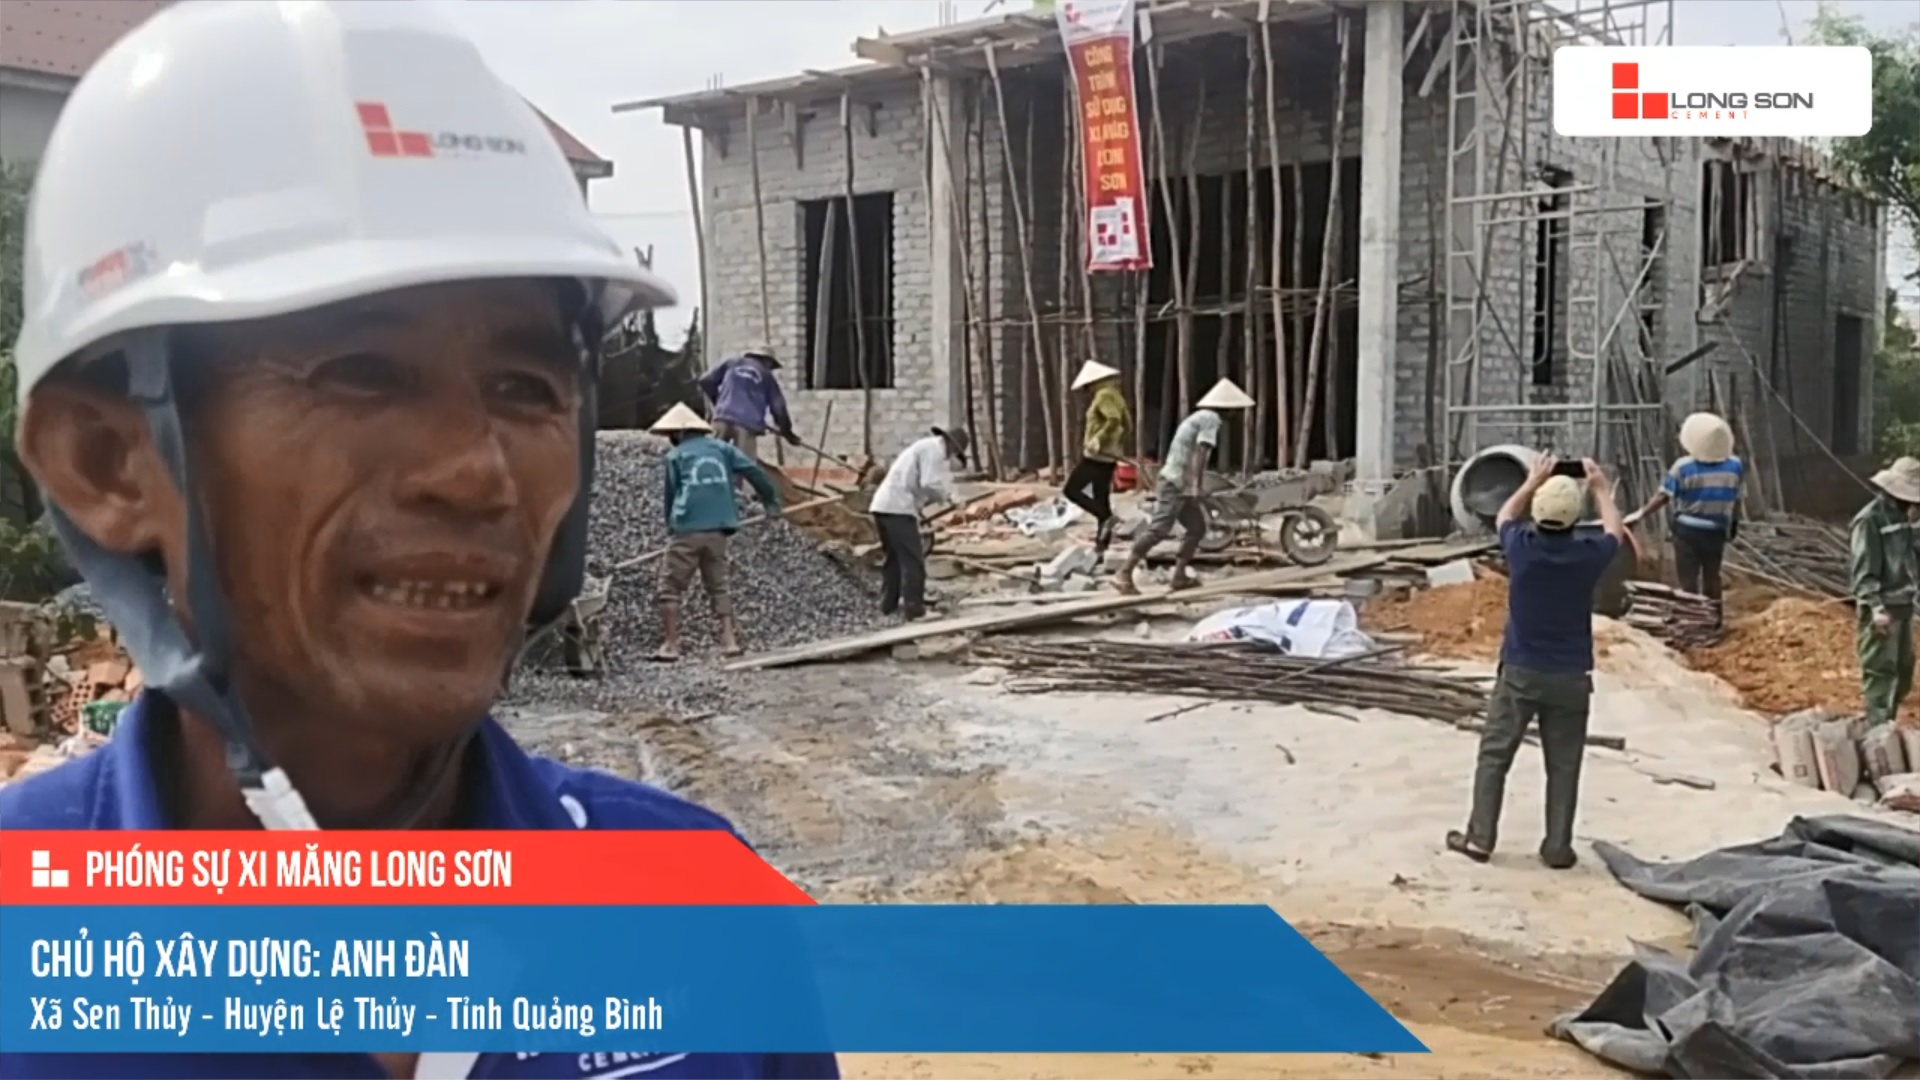 Phóng sự công trình sử dụng Xi măng Long Sơn tại Quảng Bình 03.06.2021